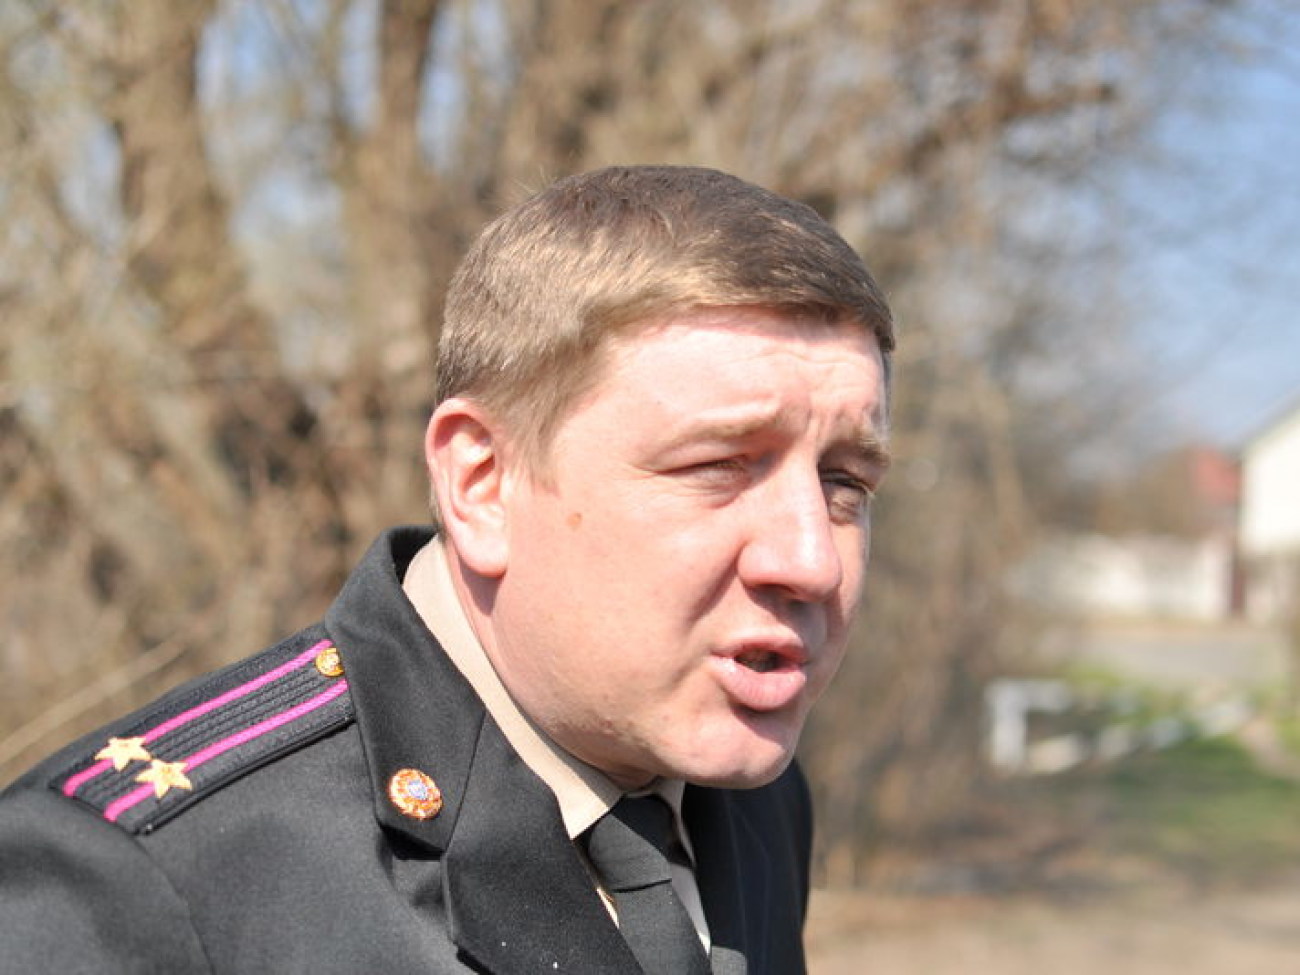 Спасатели показали причины пожаров в частном секторе Киева, 28 марта 2014г.